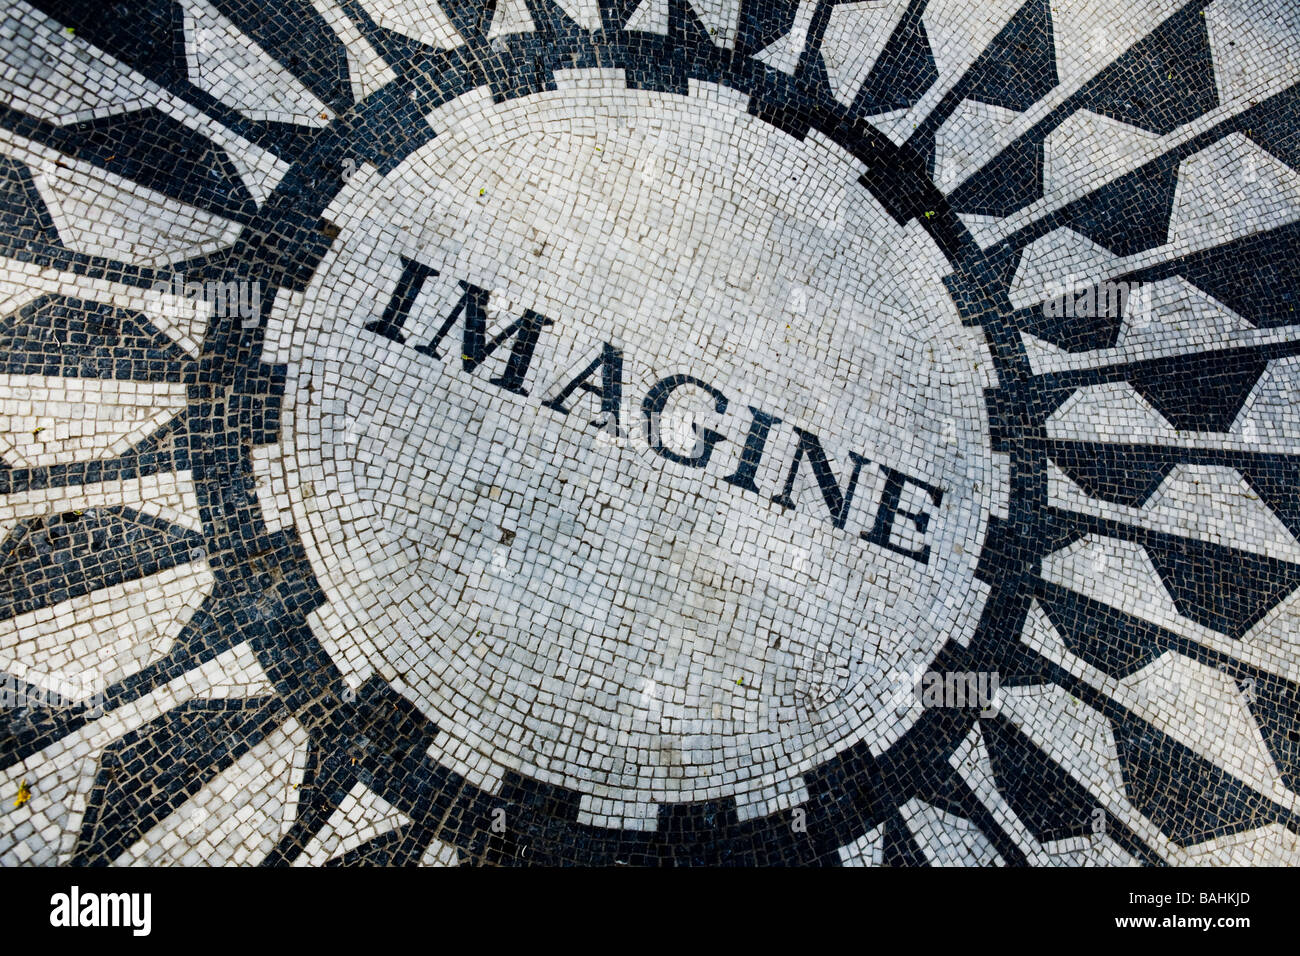 John Lennon Imagine tribute memorial shrine Central Park New York City Stock Photo